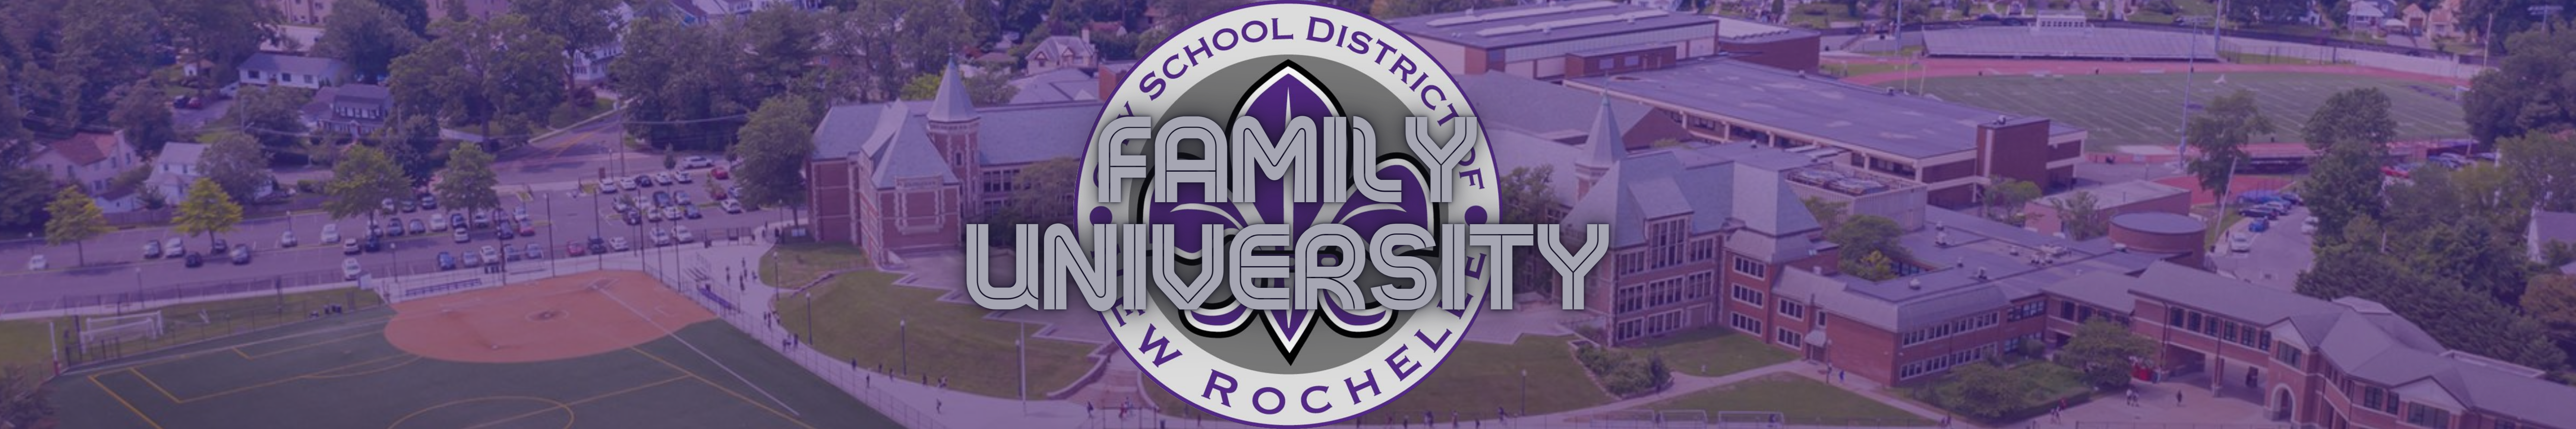 Family University banner